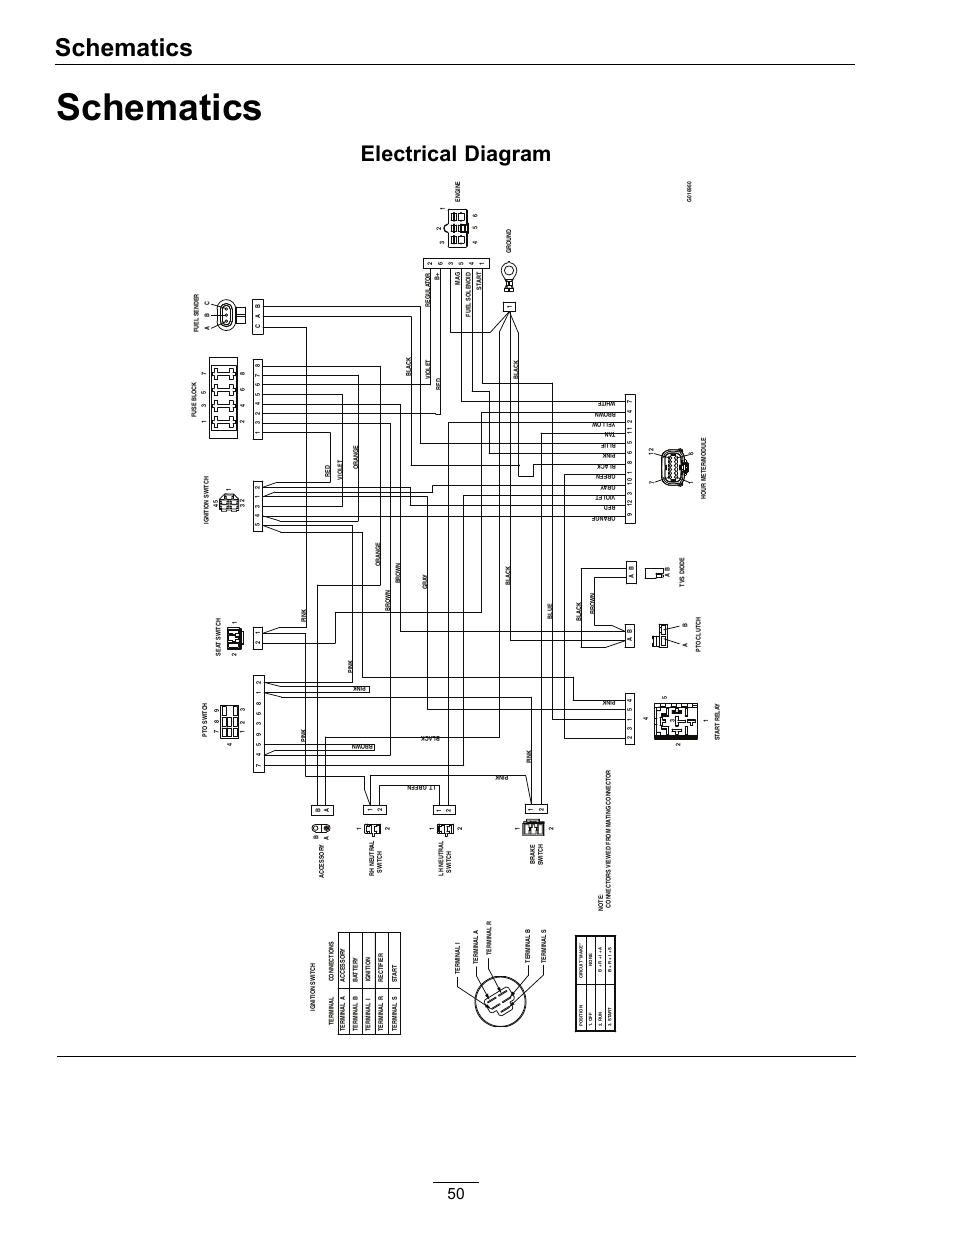 1979 porsche 924 fuel injection wiring diagram